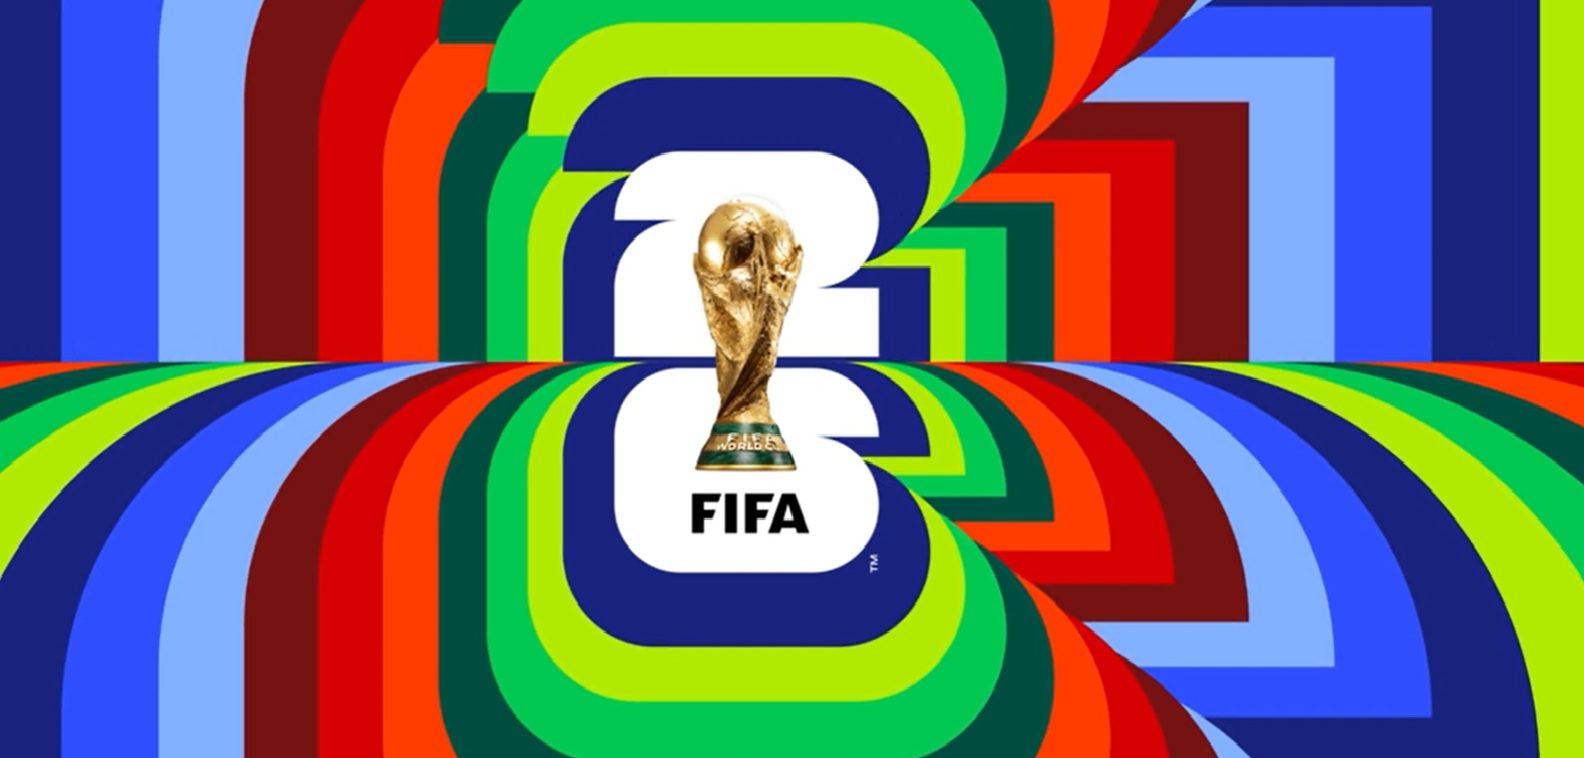 Primeira rodada das Eliminatórias nda Copa do Mundo 2026 iniciam nesta quinta (7) - Foto: Reprodução/ FIFA